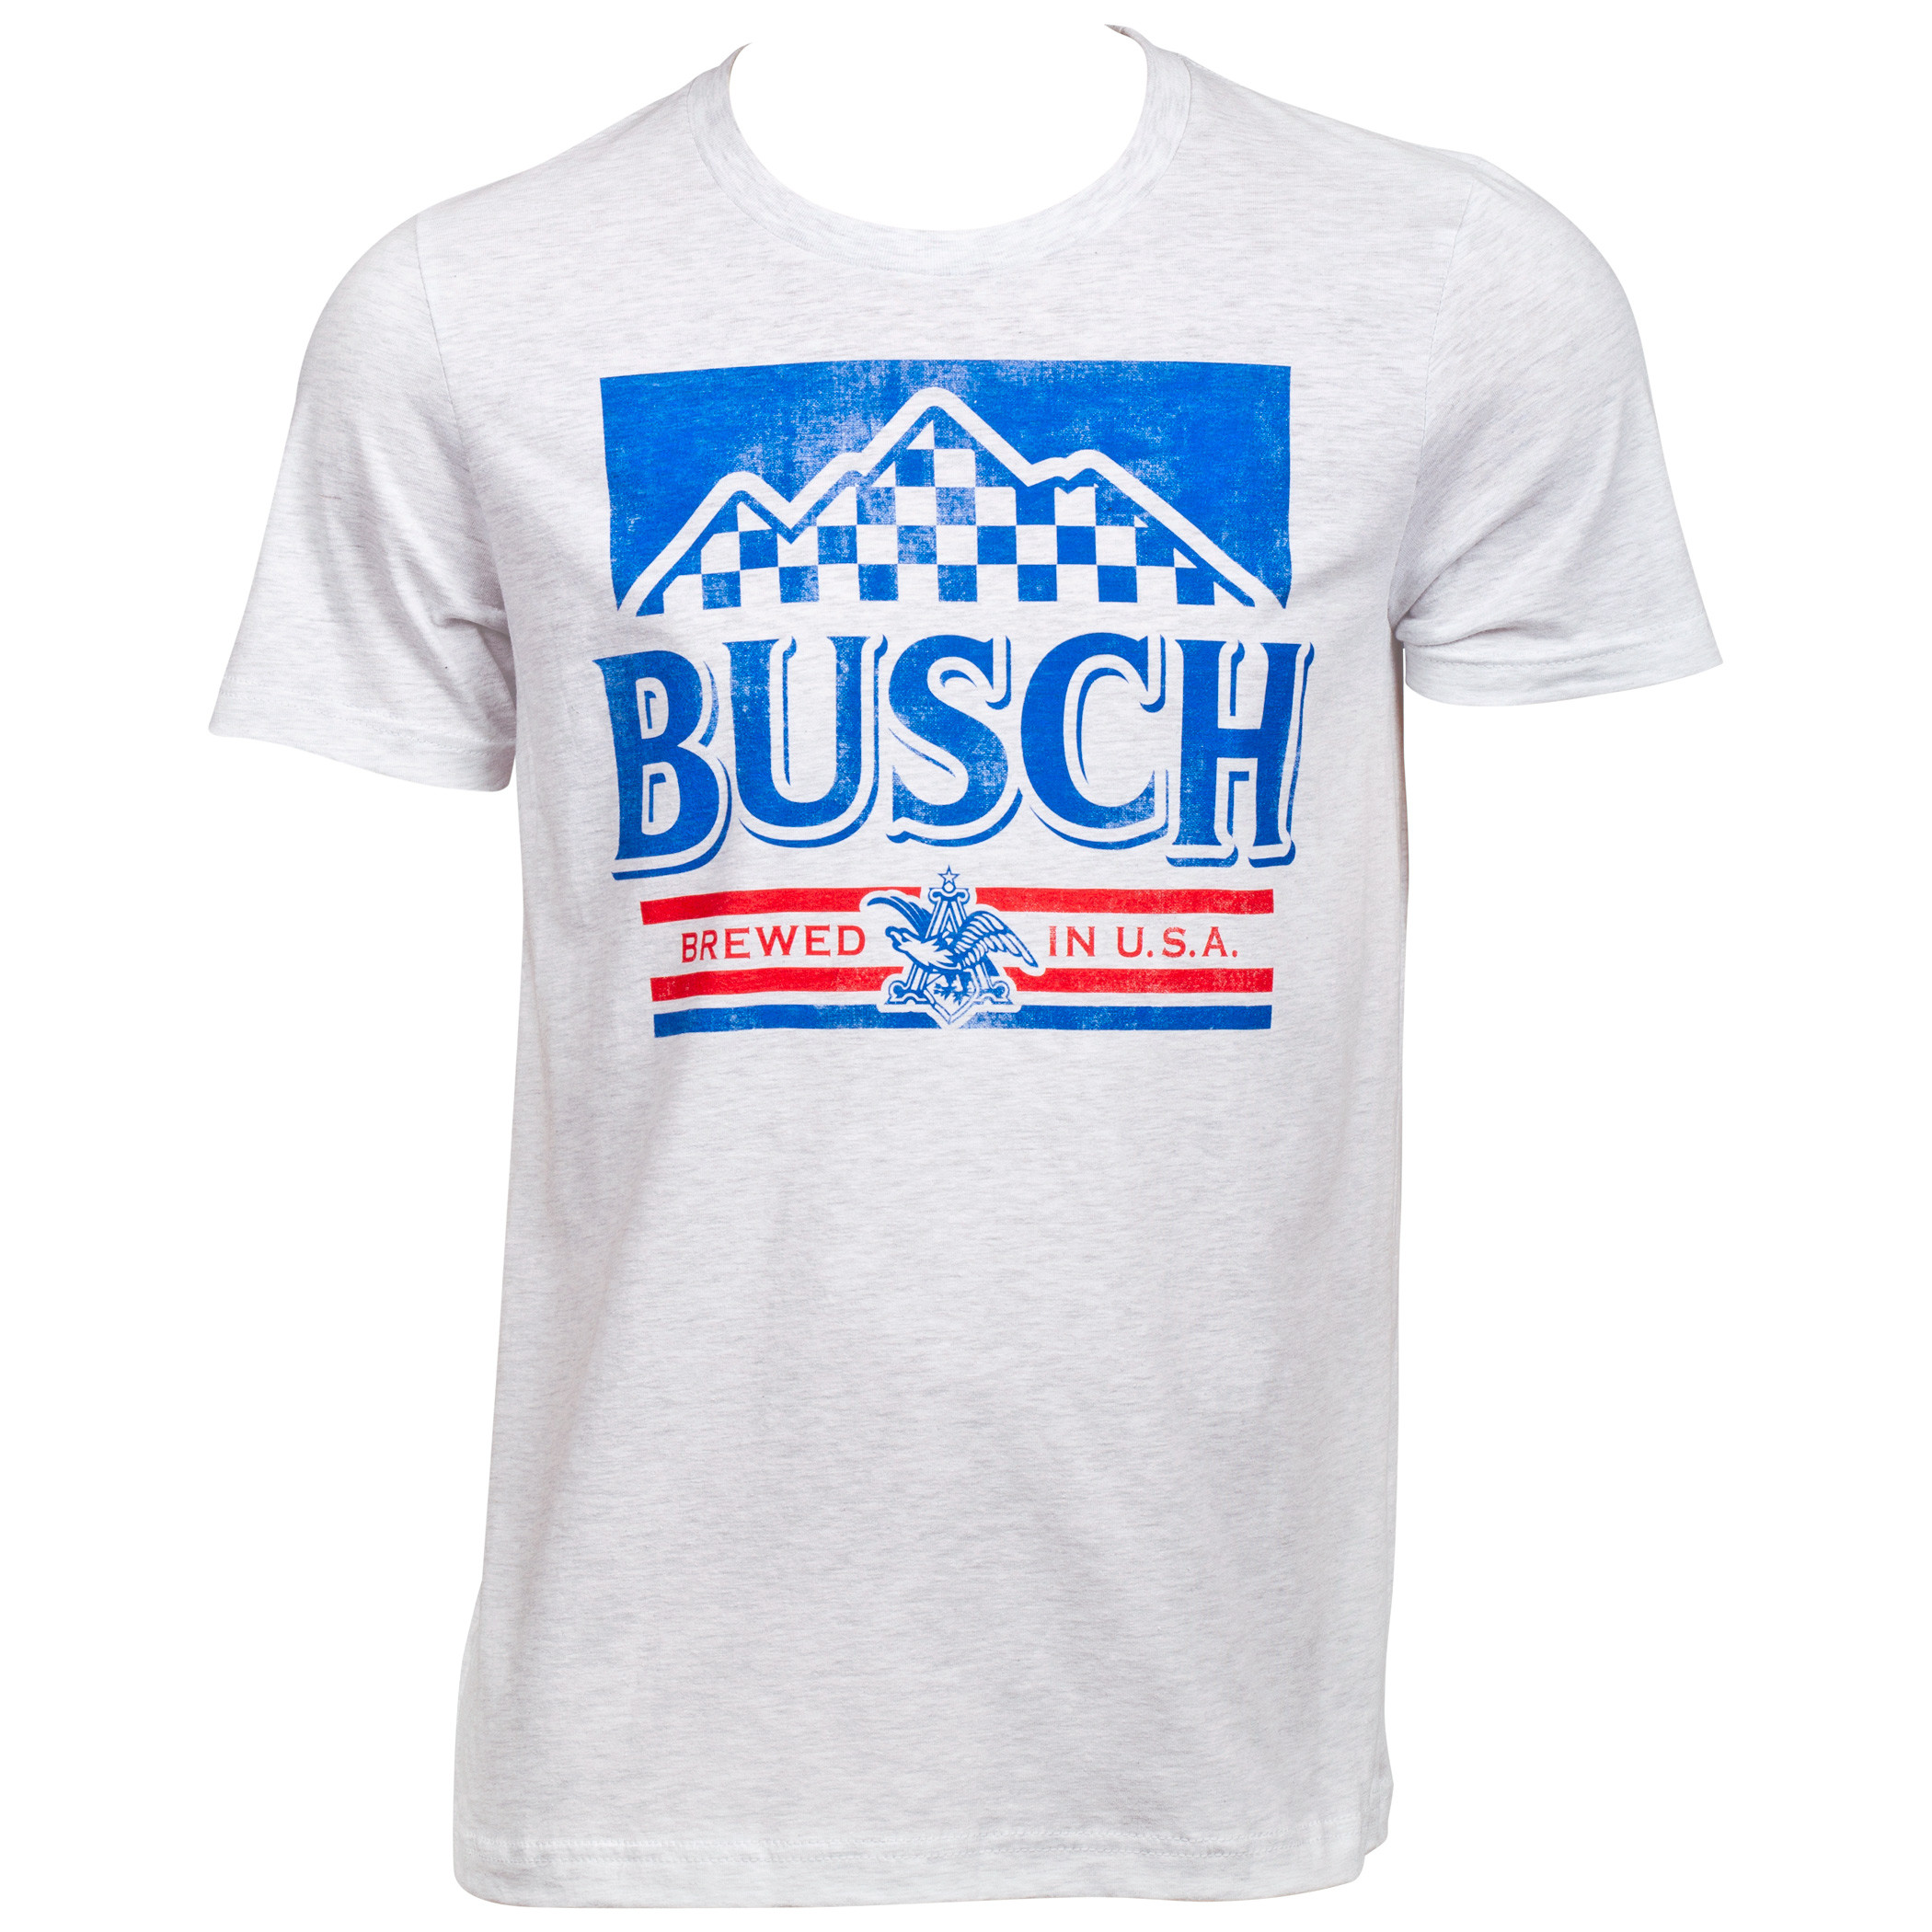 Busch Light Retro Label T Shirt M